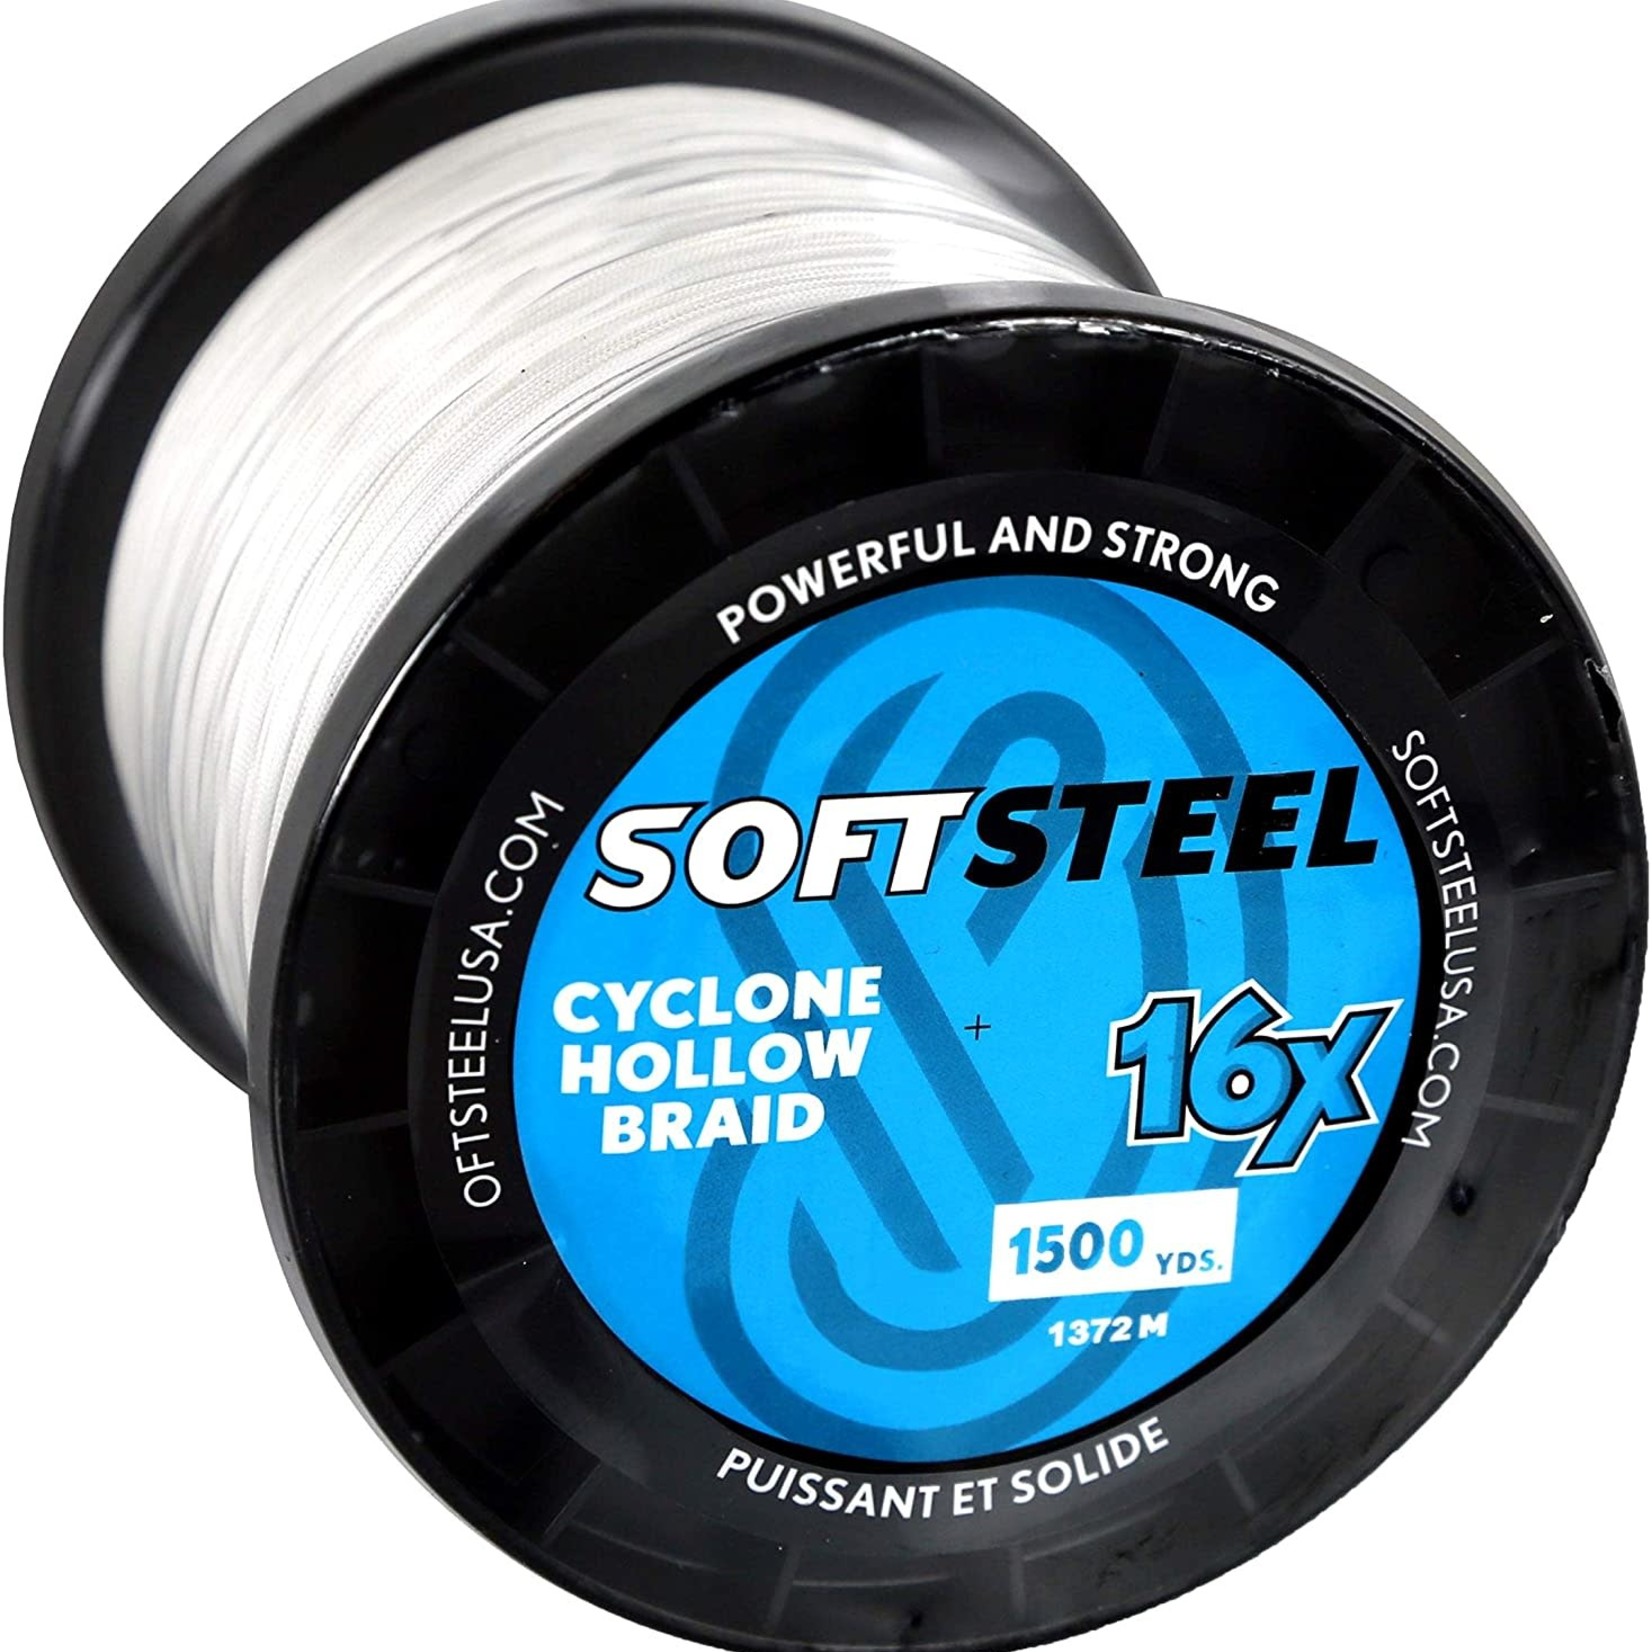 Soft Steel Cyclone Hollow Braid 16x 150lb 1500yd